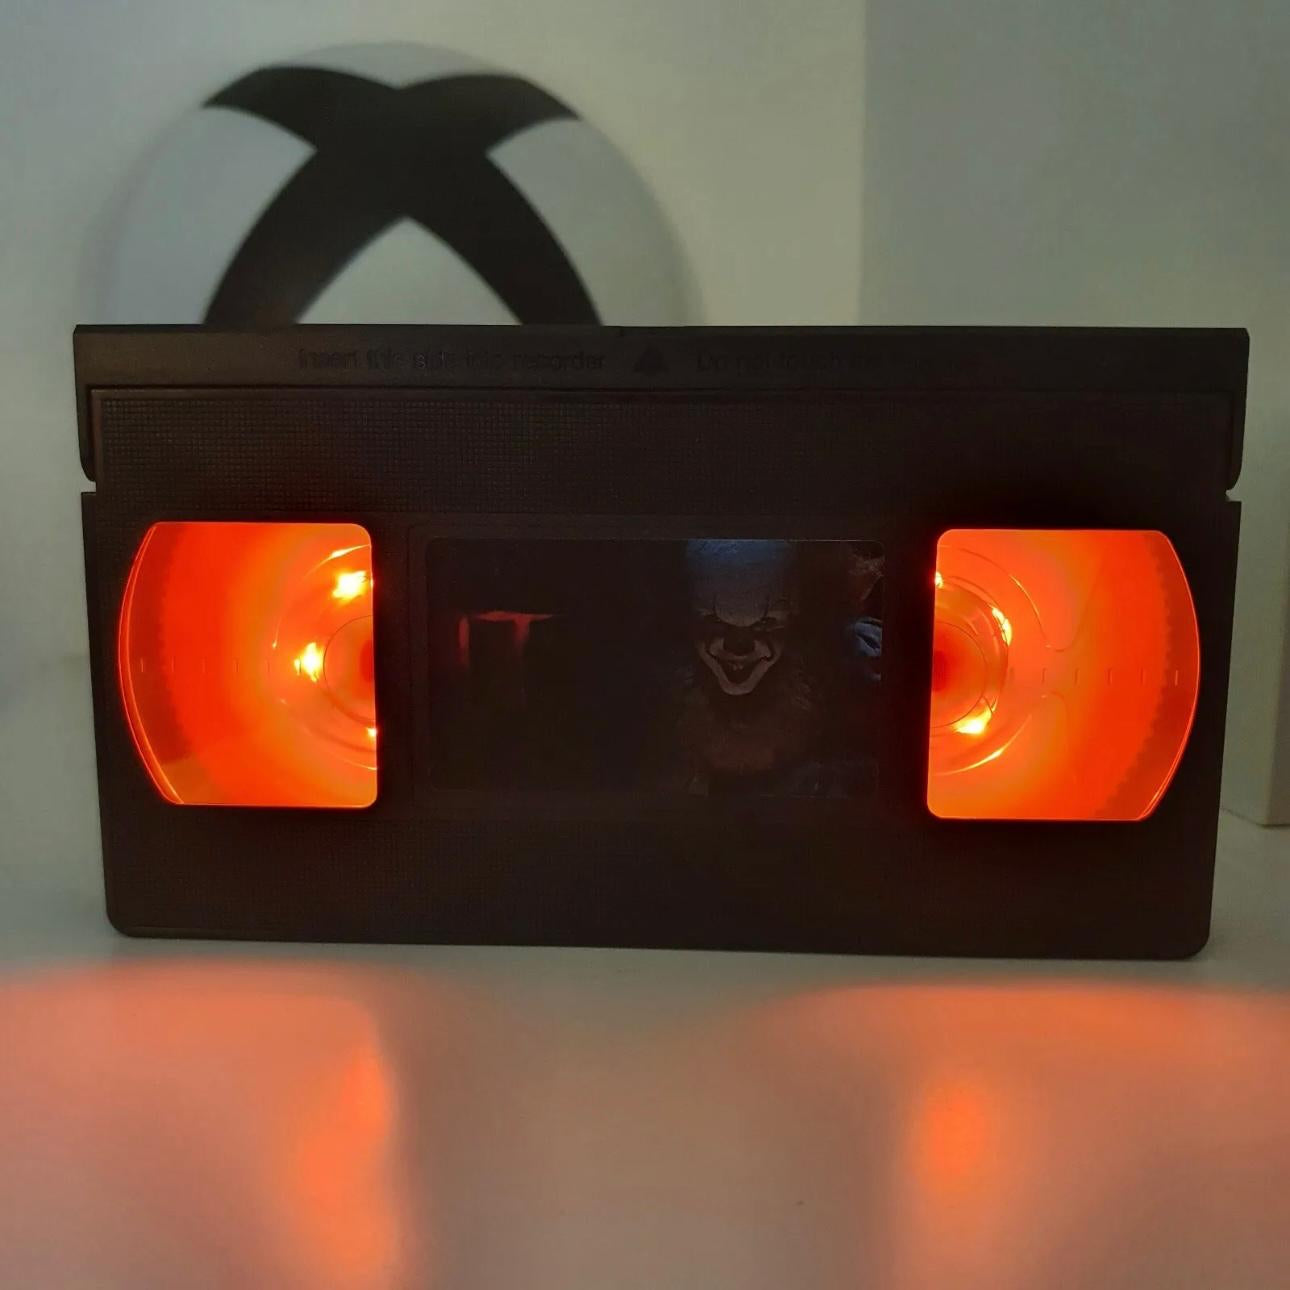 IT (2017) VHS LED Lamp